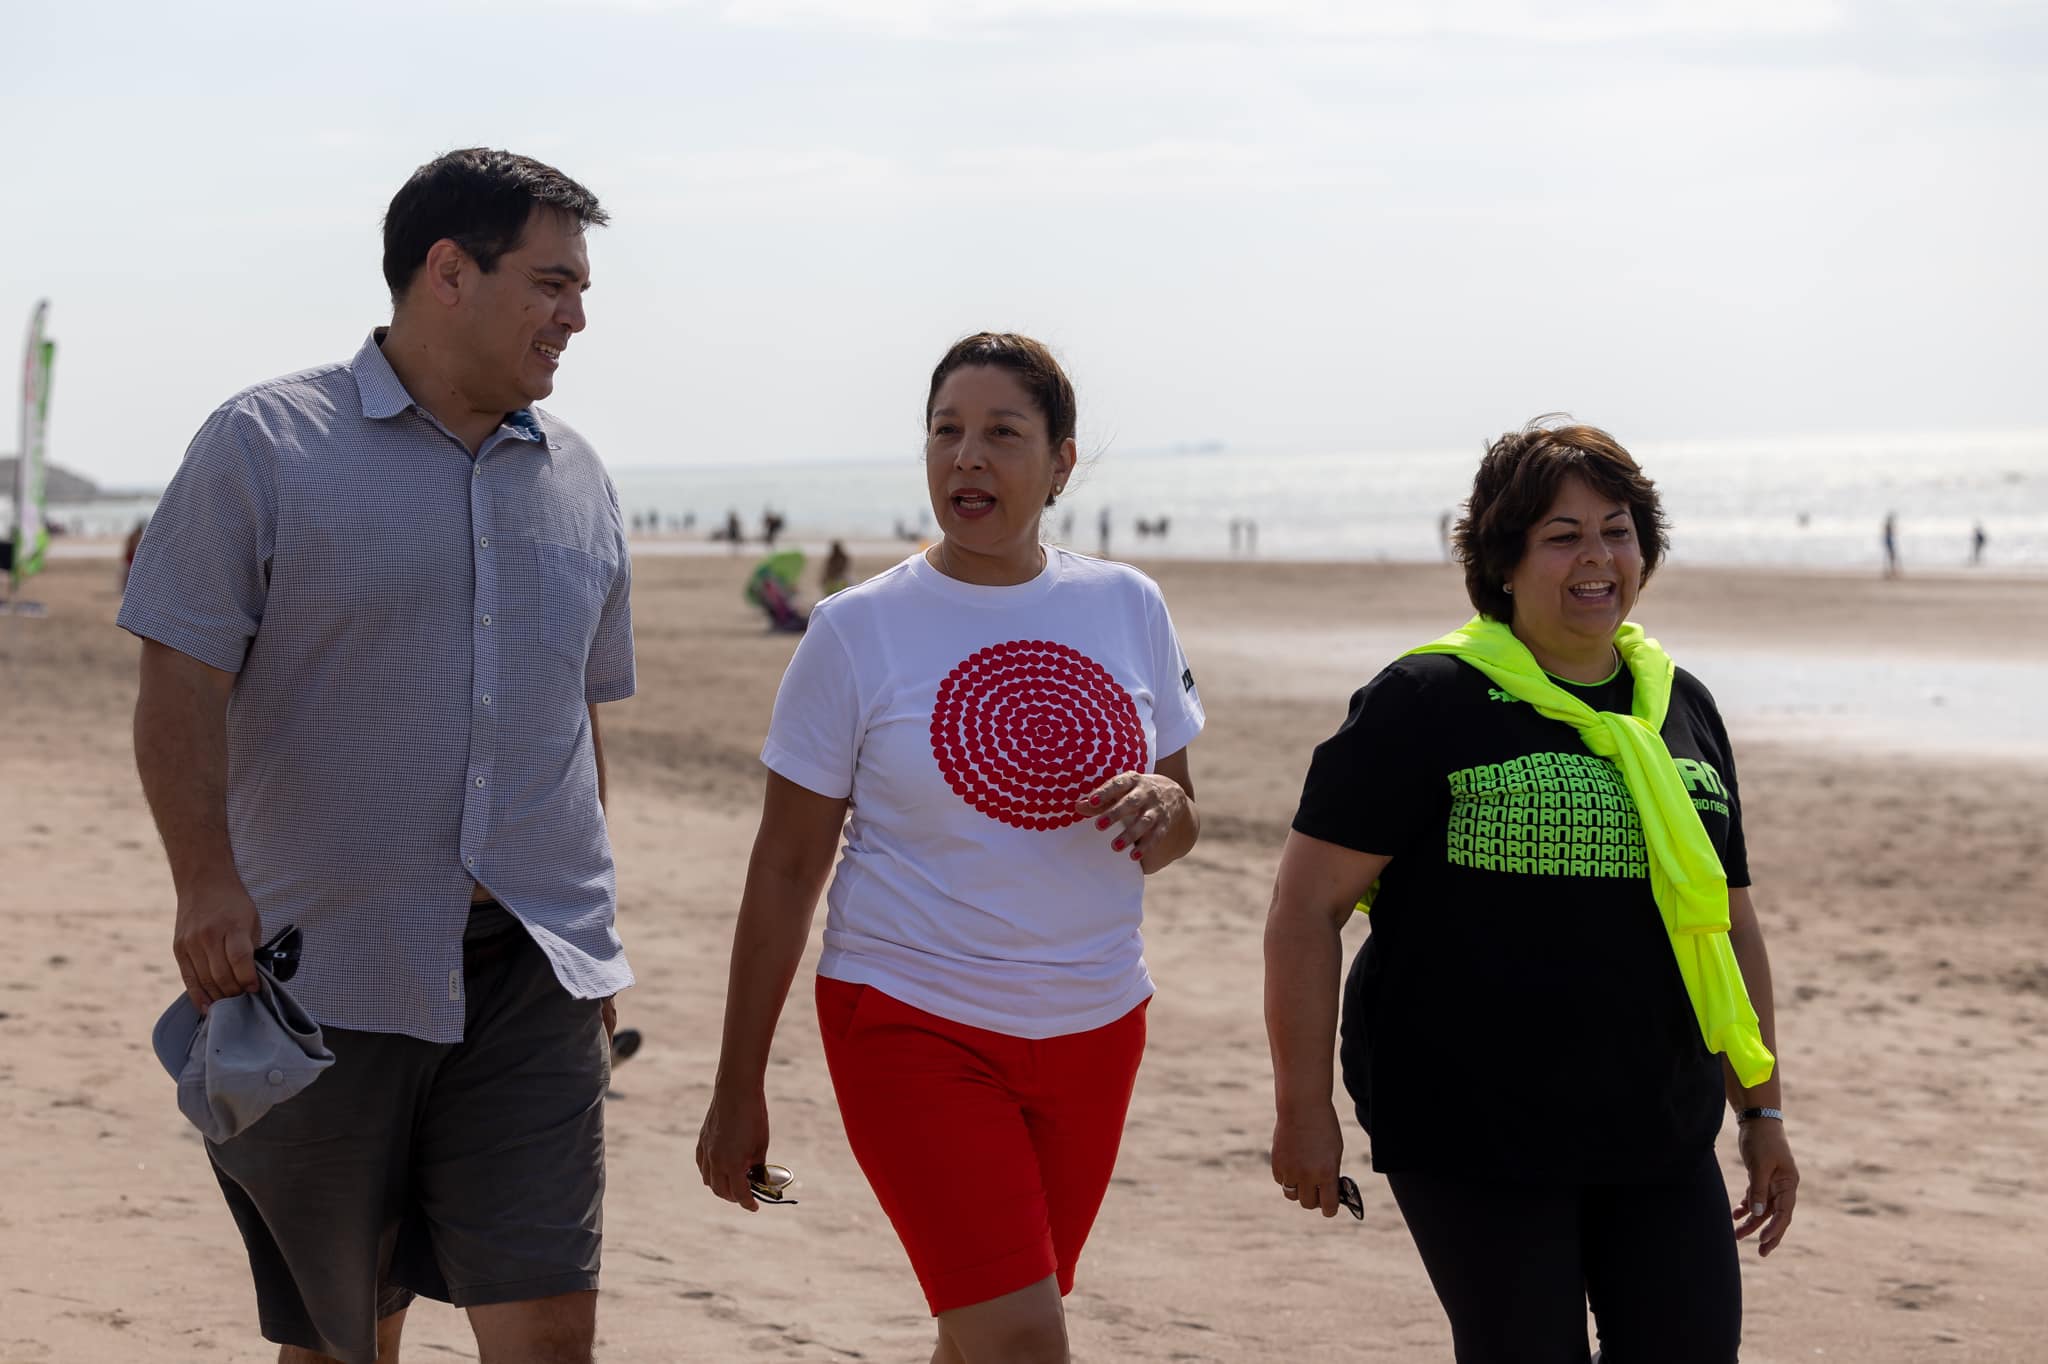 La gobernadora Arabela Carreras caminó ayer por Las Grutas junto a Diego Canestraci, el futuro ministro, y Martha Vélez. Foto: Gentileza